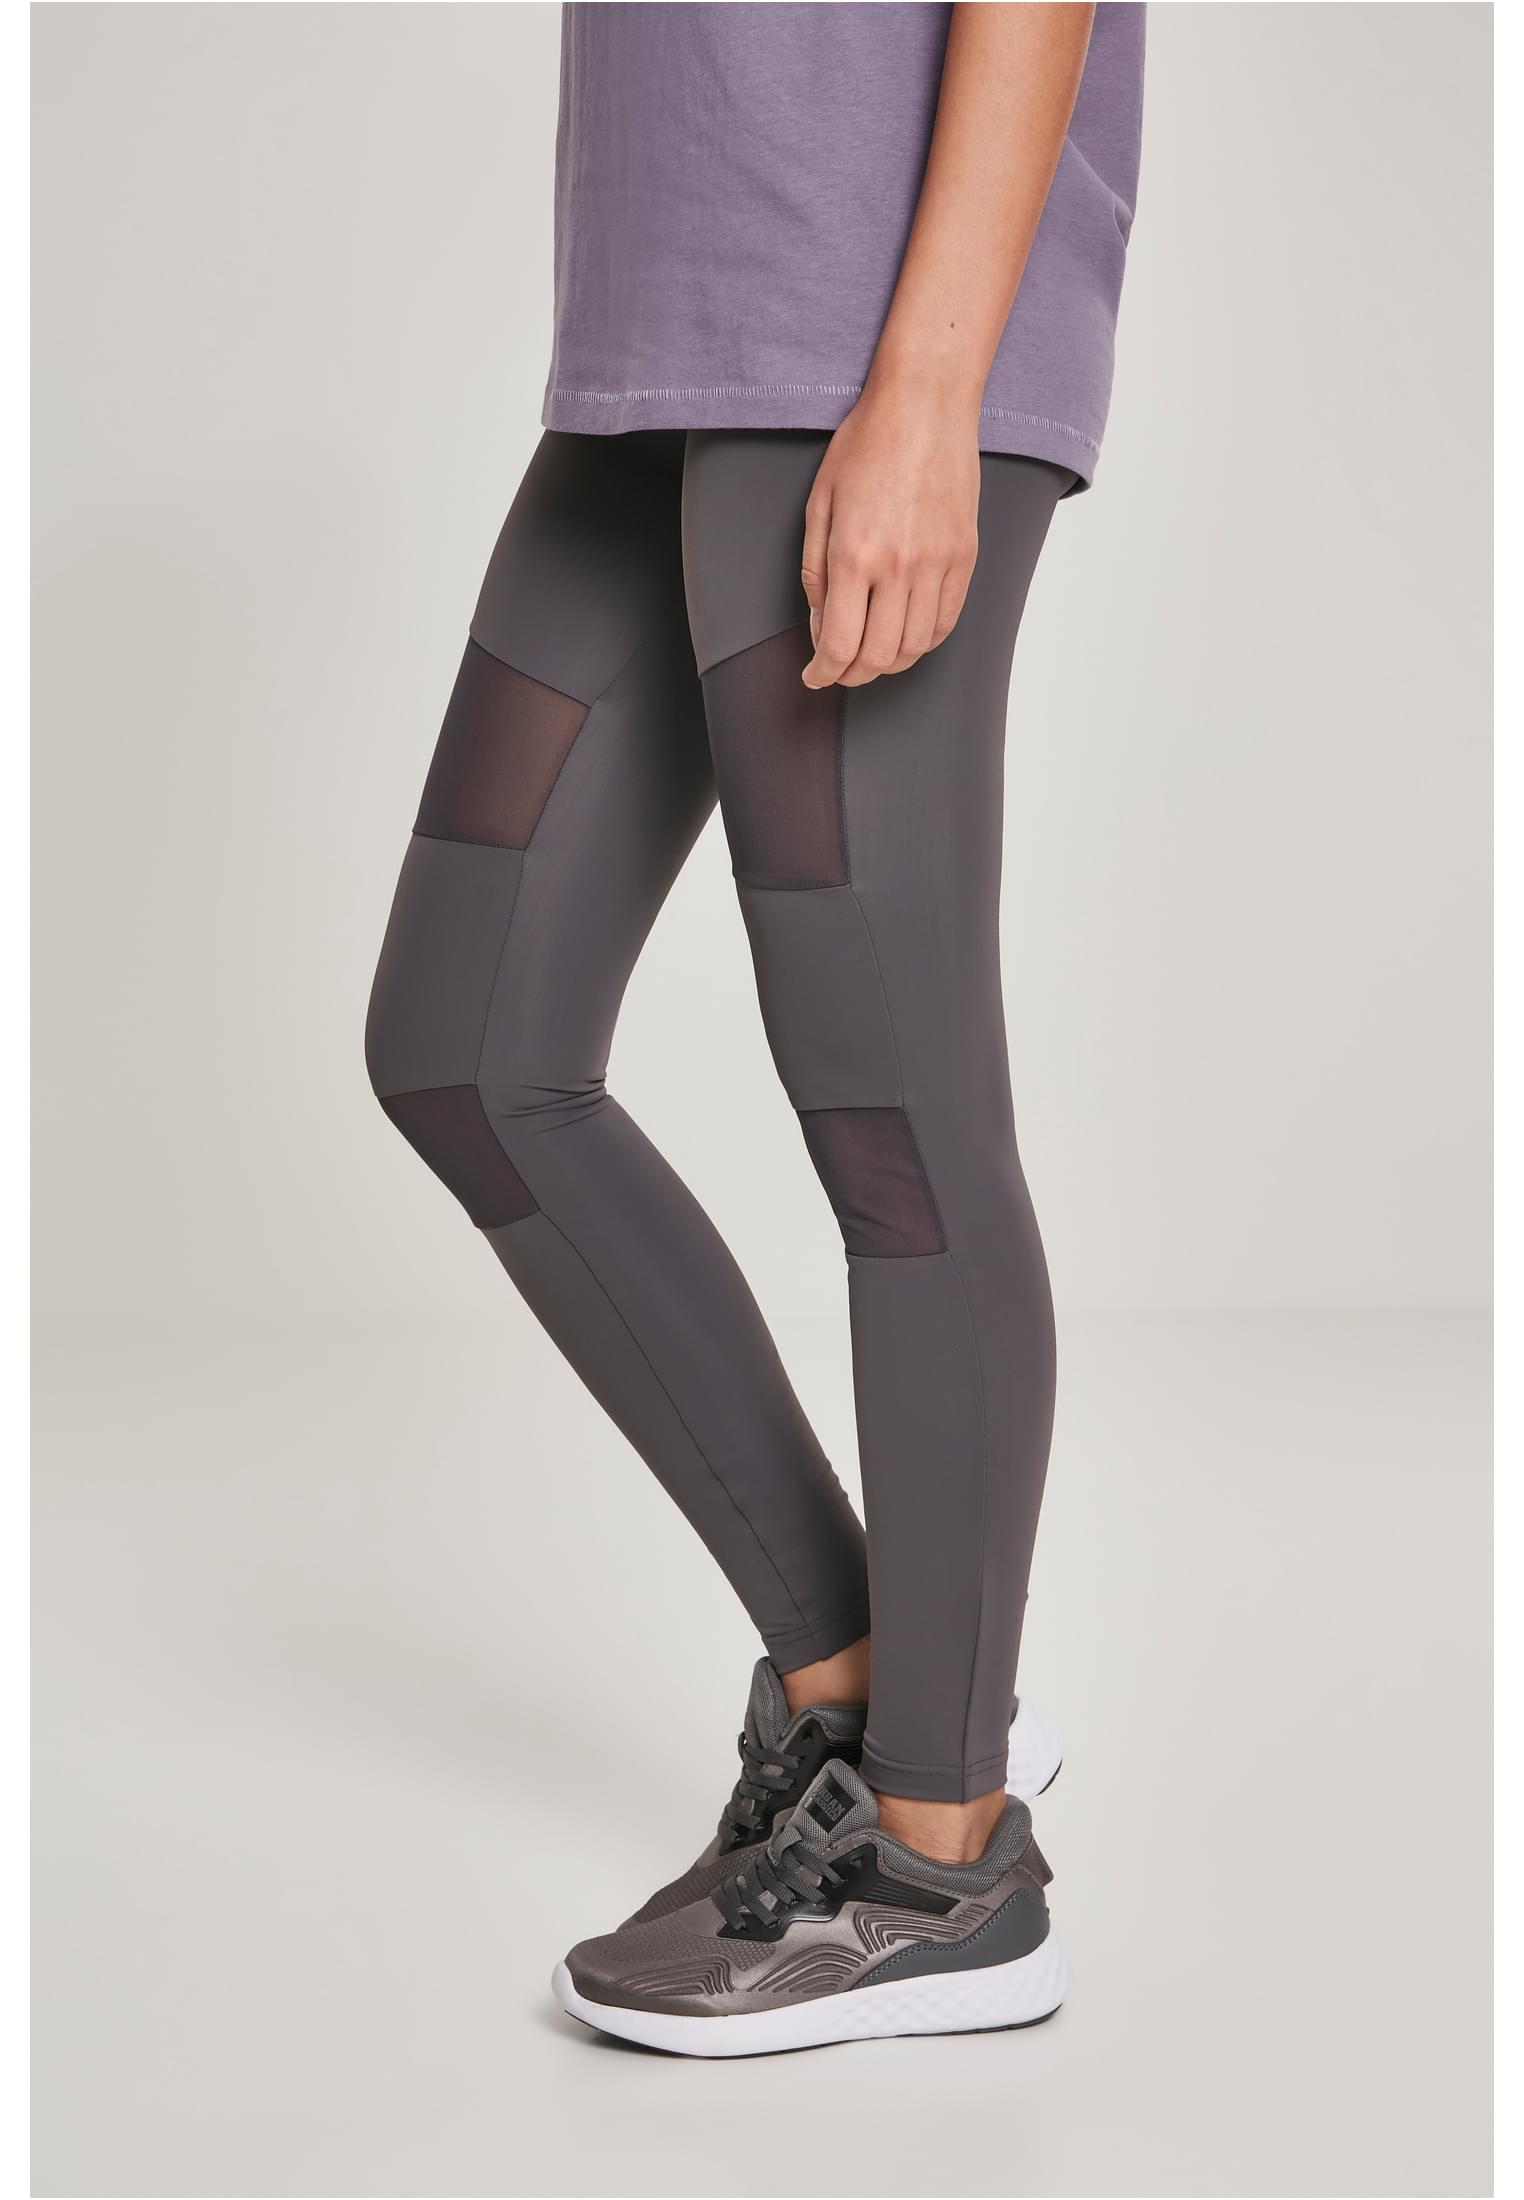 Damen Ladies Tech Mesh Leggings in Farbe dark grey